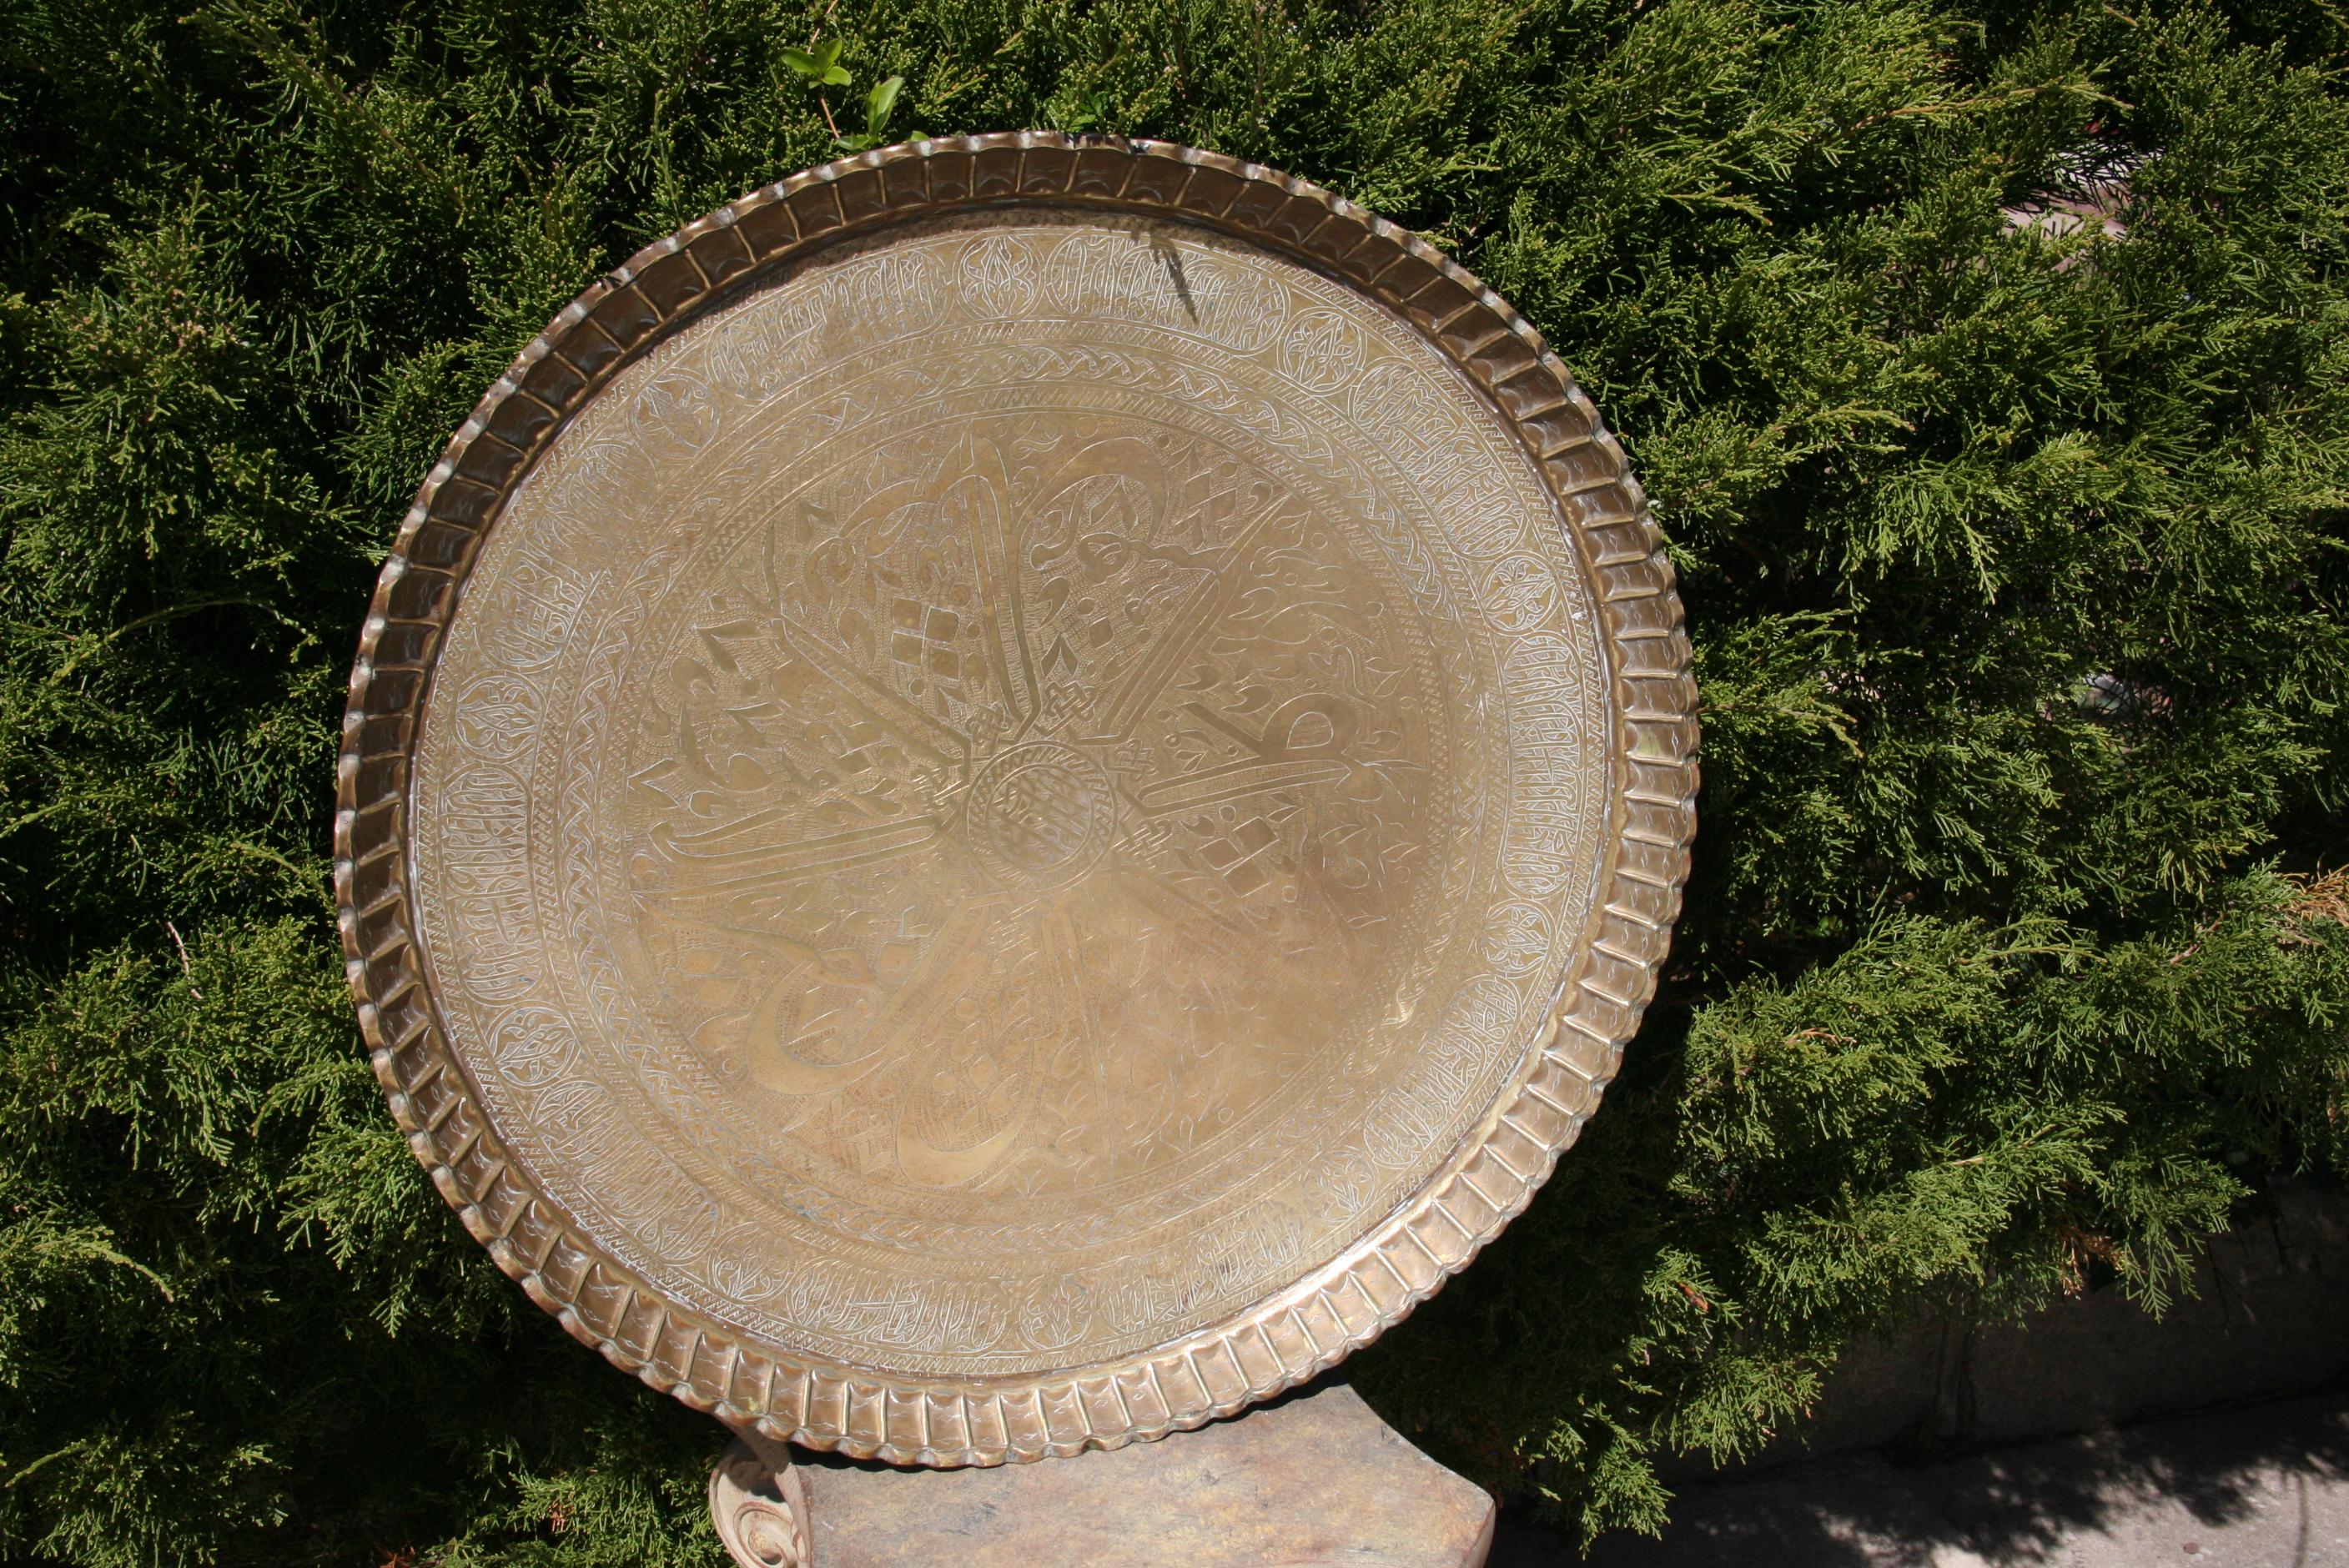 3-481 Grand plateau décoratif mauresque en laiton fait à la main avec des motifs géométriques islamiques élaborés et fins, avec bord en crête de tarte